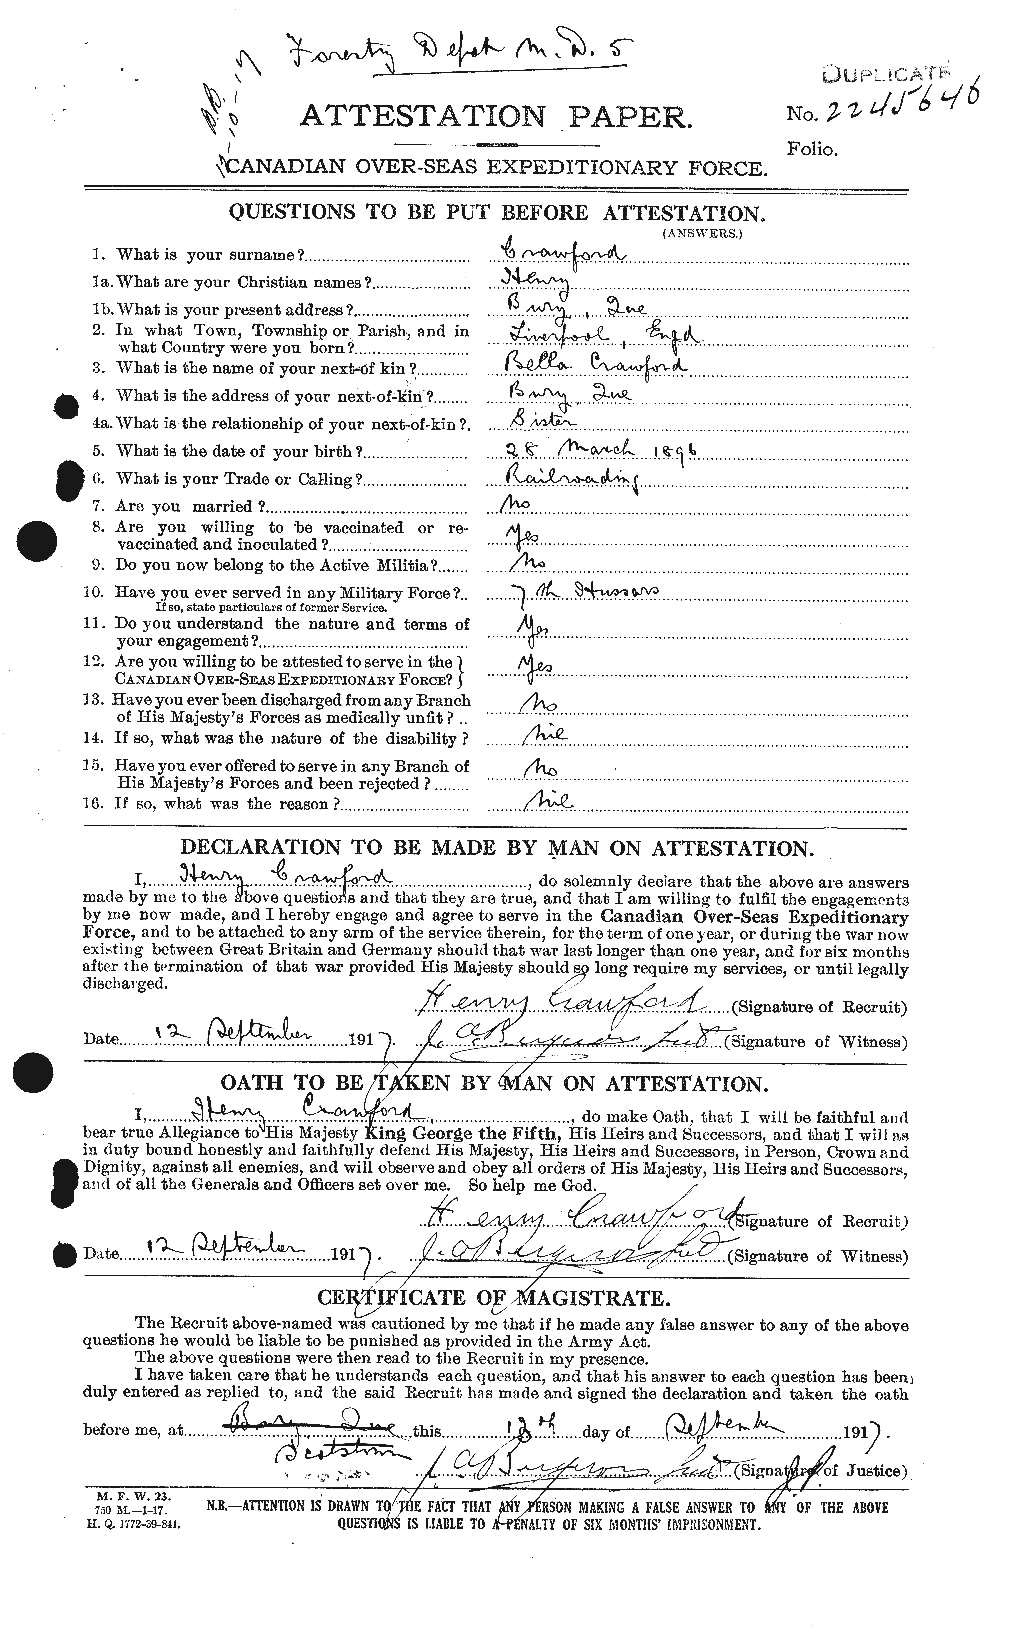 Dossiers du Personnel de la Première Guerre mondiale - CEC 060573a